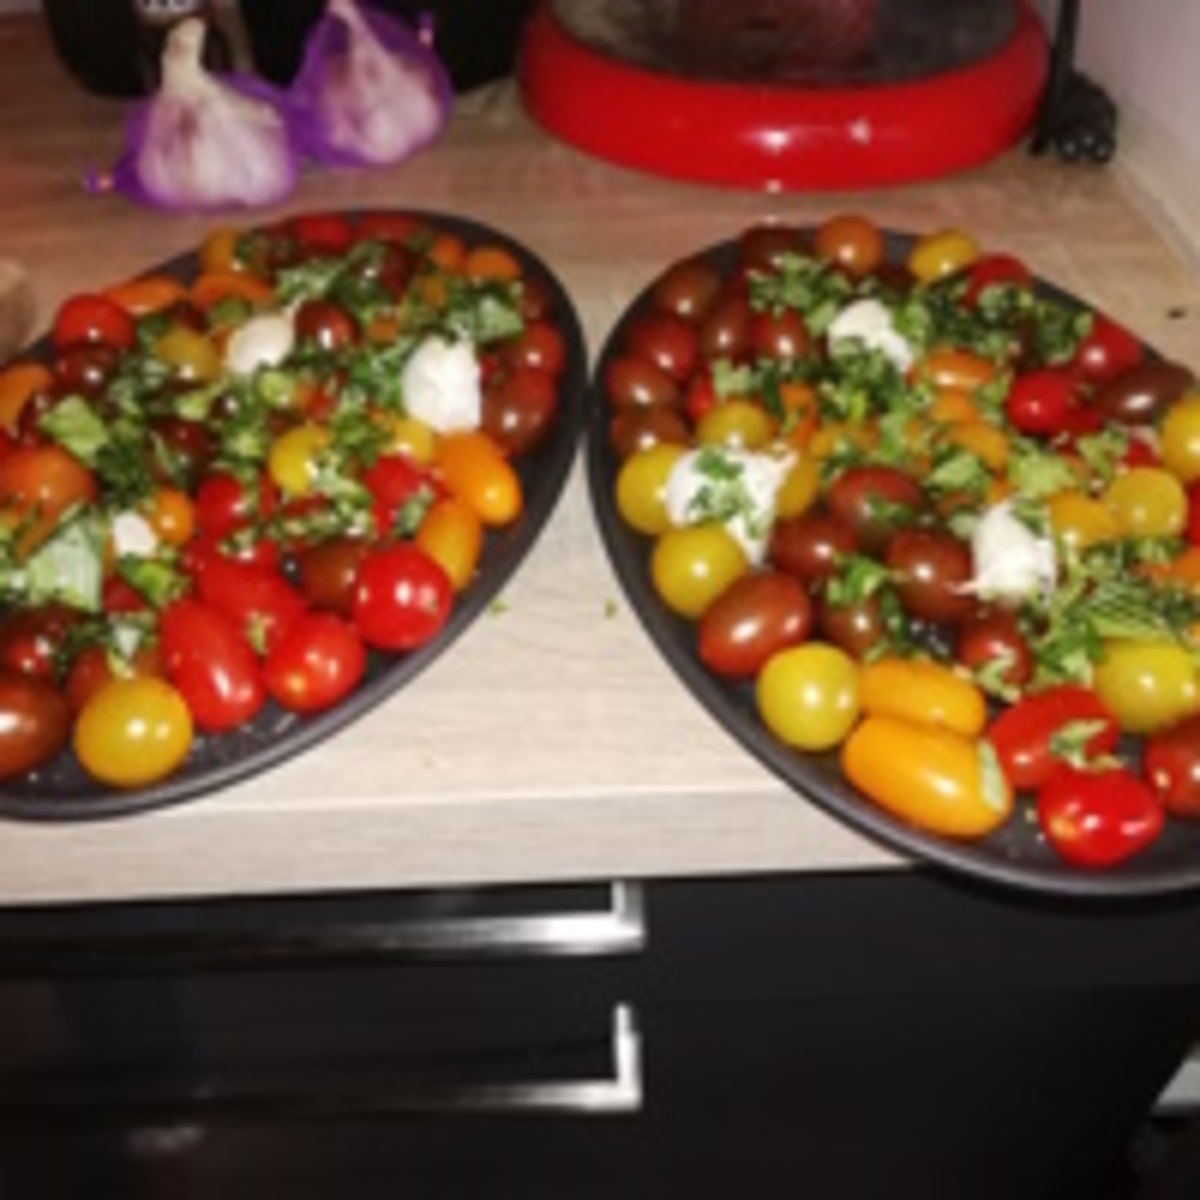 Tomaatjes met basilicum, knoflook en olijfolie